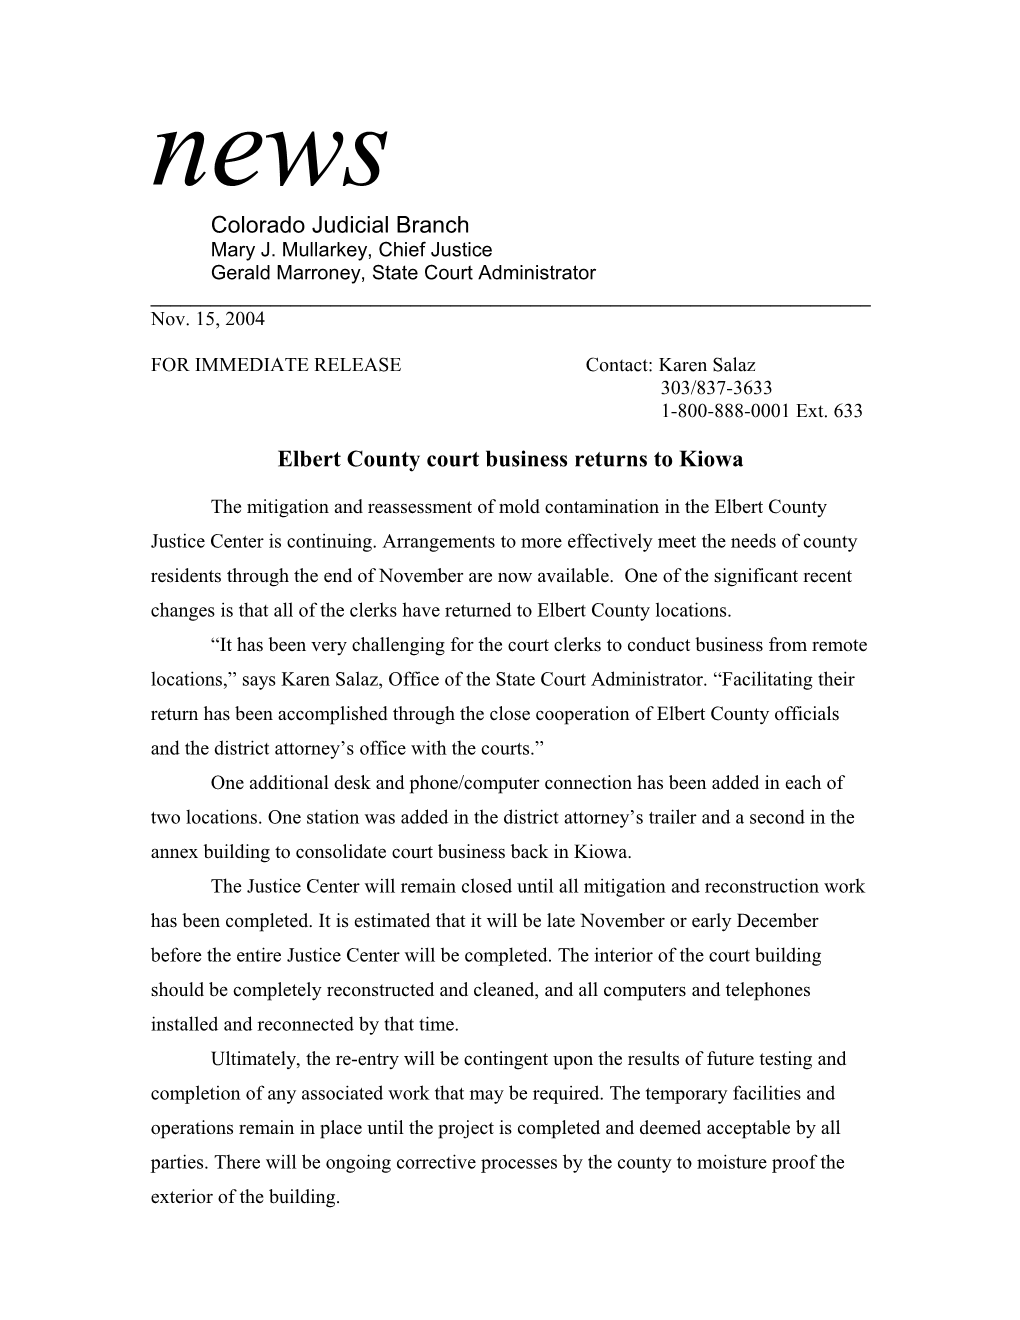 Elbert County Court Business Returns to Kiowa